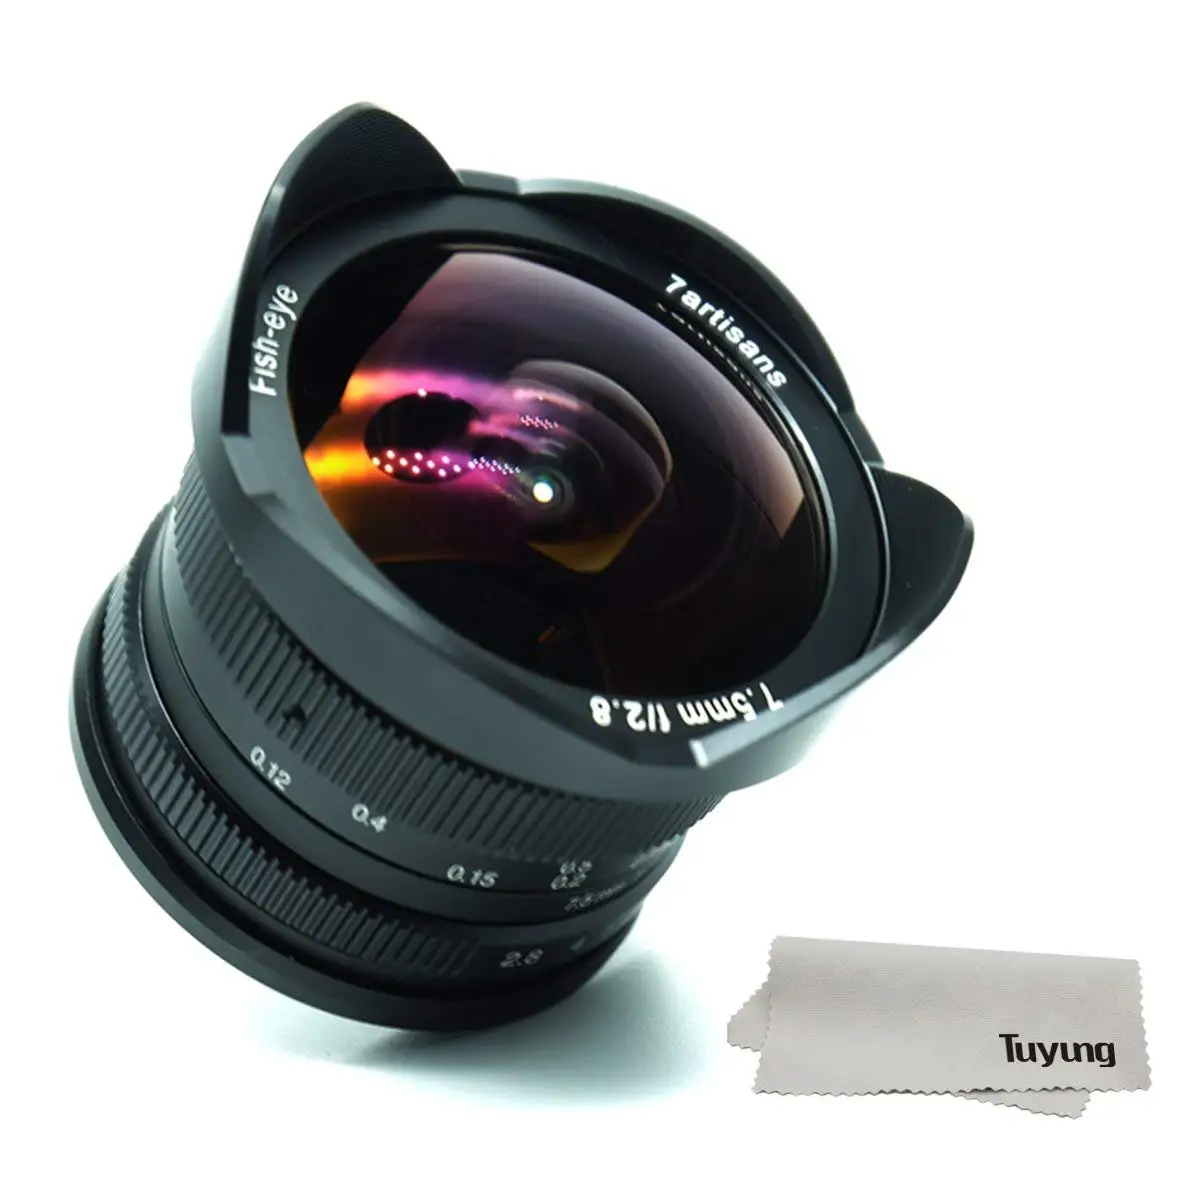 

7artisans 7.5mm F2.8 micro four thirds lens for panasonic G7 GF3 GF10 GM1 GM10 GX1 GX9 GH5 180 degree mirrorless fisheye lenses, Black